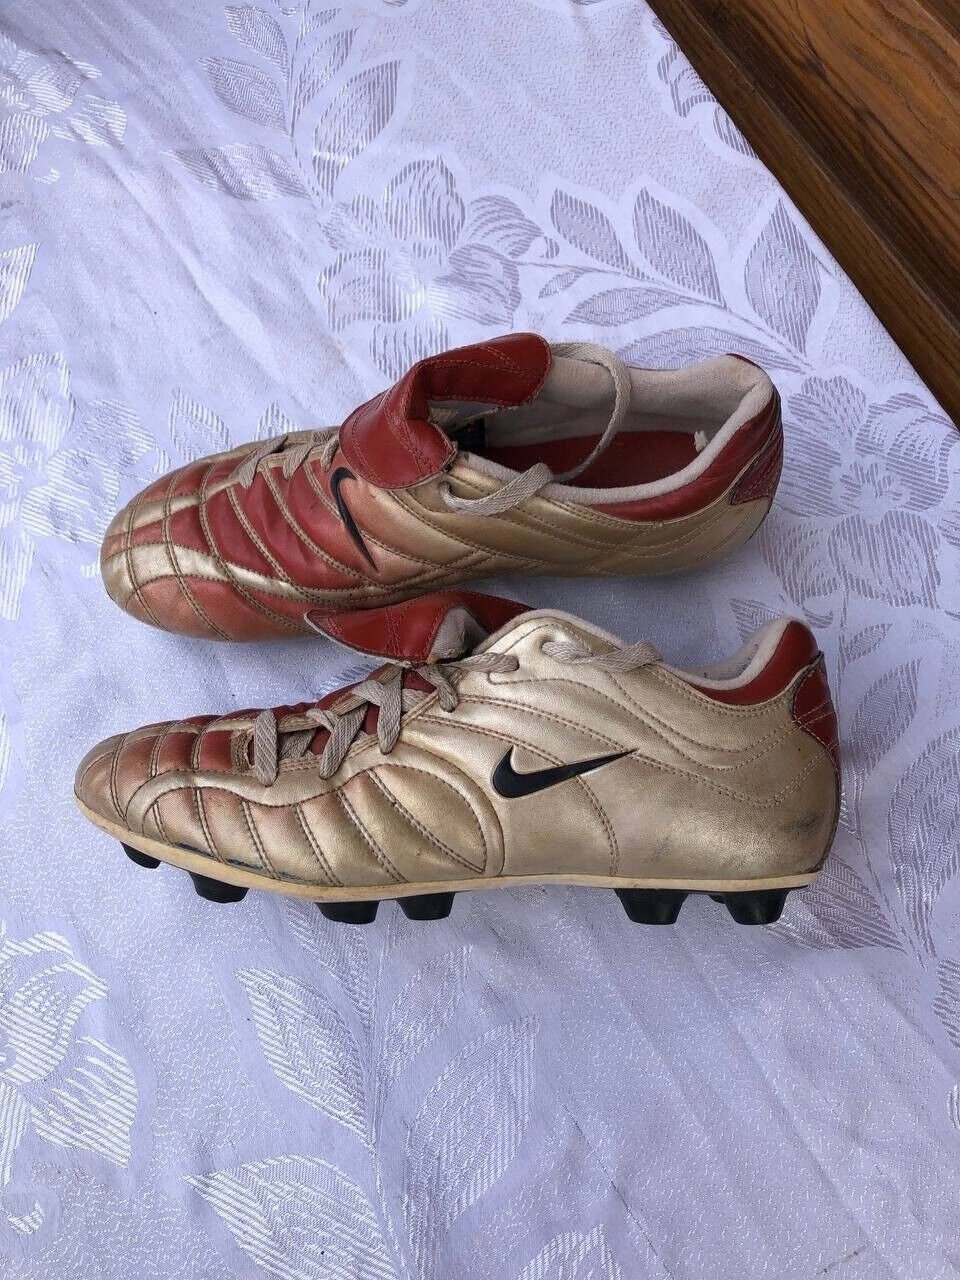 Vintage Soccer Boots 